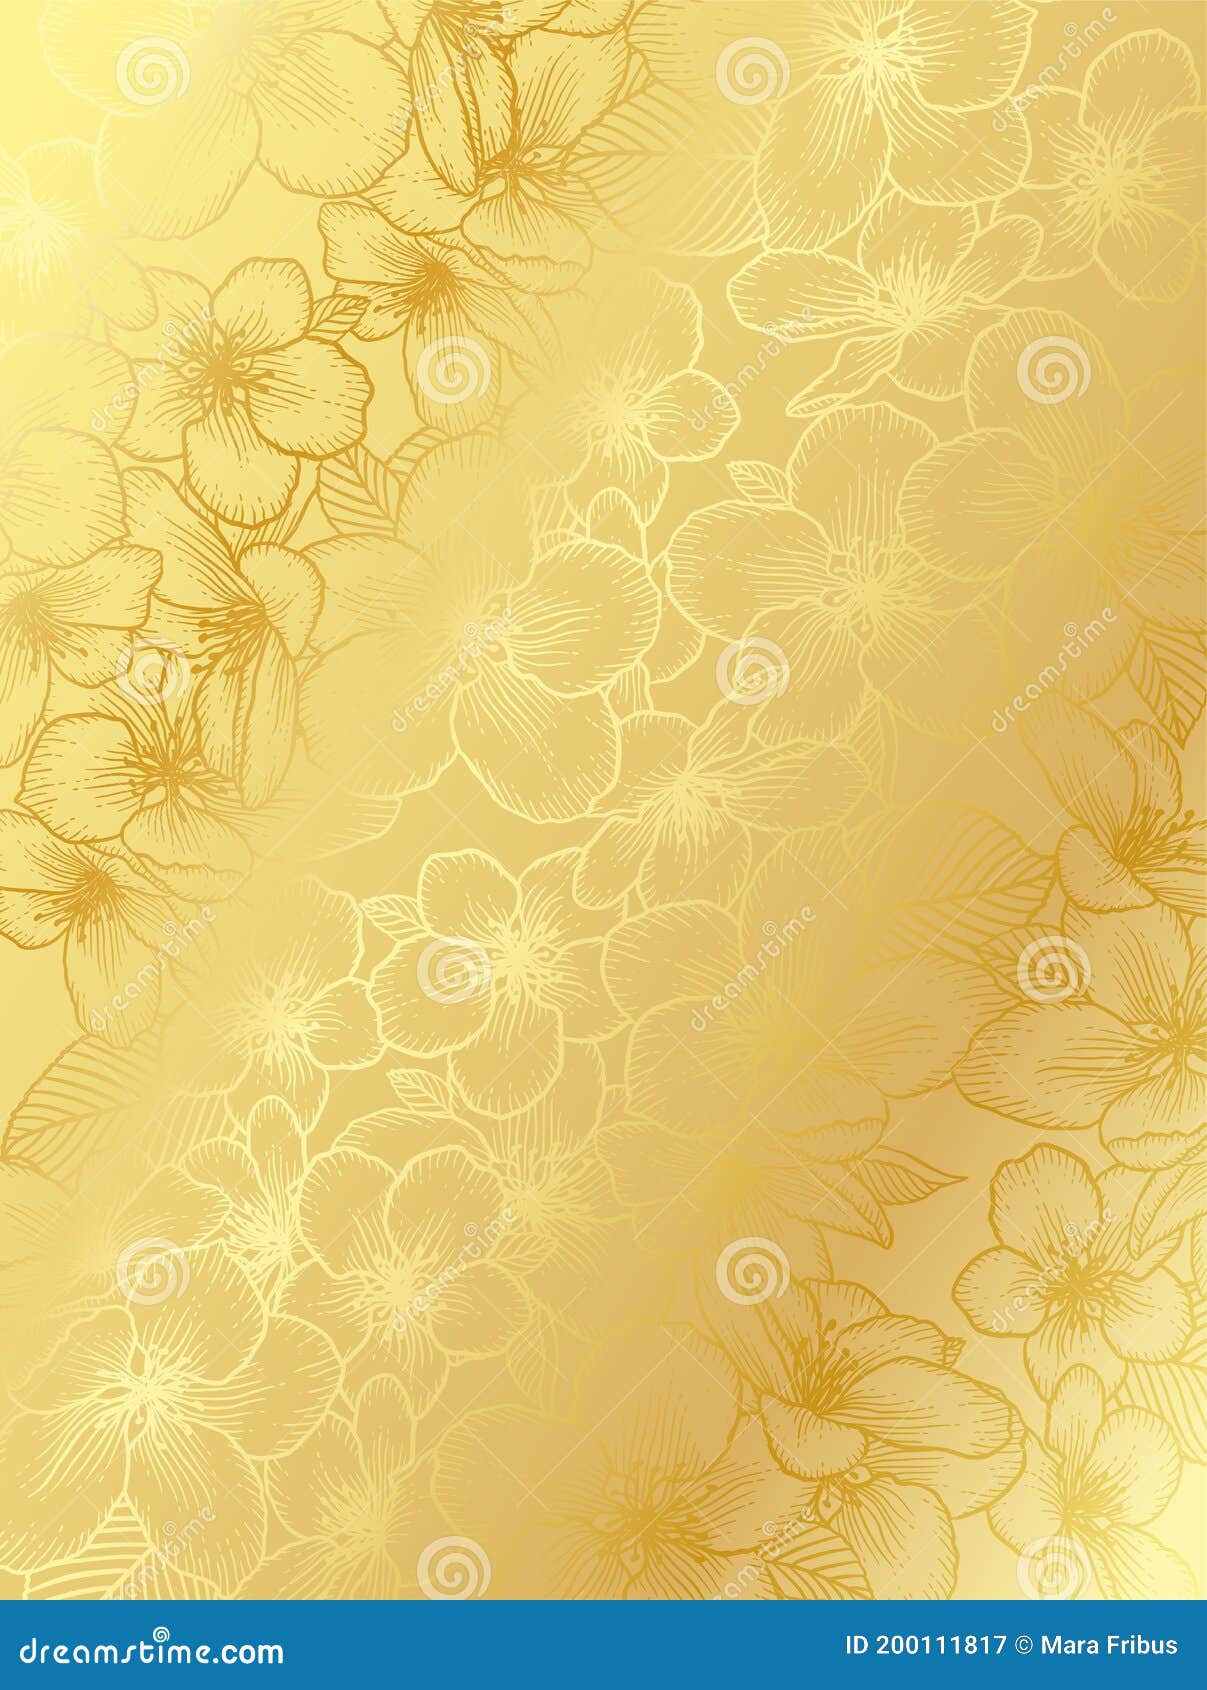 Vector hình nền cưới hoa vàng tinh tế và sang trọng sẽ khiến bạn phải trầm trồ ngay từ cái nhìn đầu tiên. Với sự kết hợp hài hòa giữa màu vàng và hình ảnh hoa cùng các chi tiết tinh tế, hình nền này sẽ mang đến cho bạn trải nghiệm đầy cảm xúc và ấn tượng.